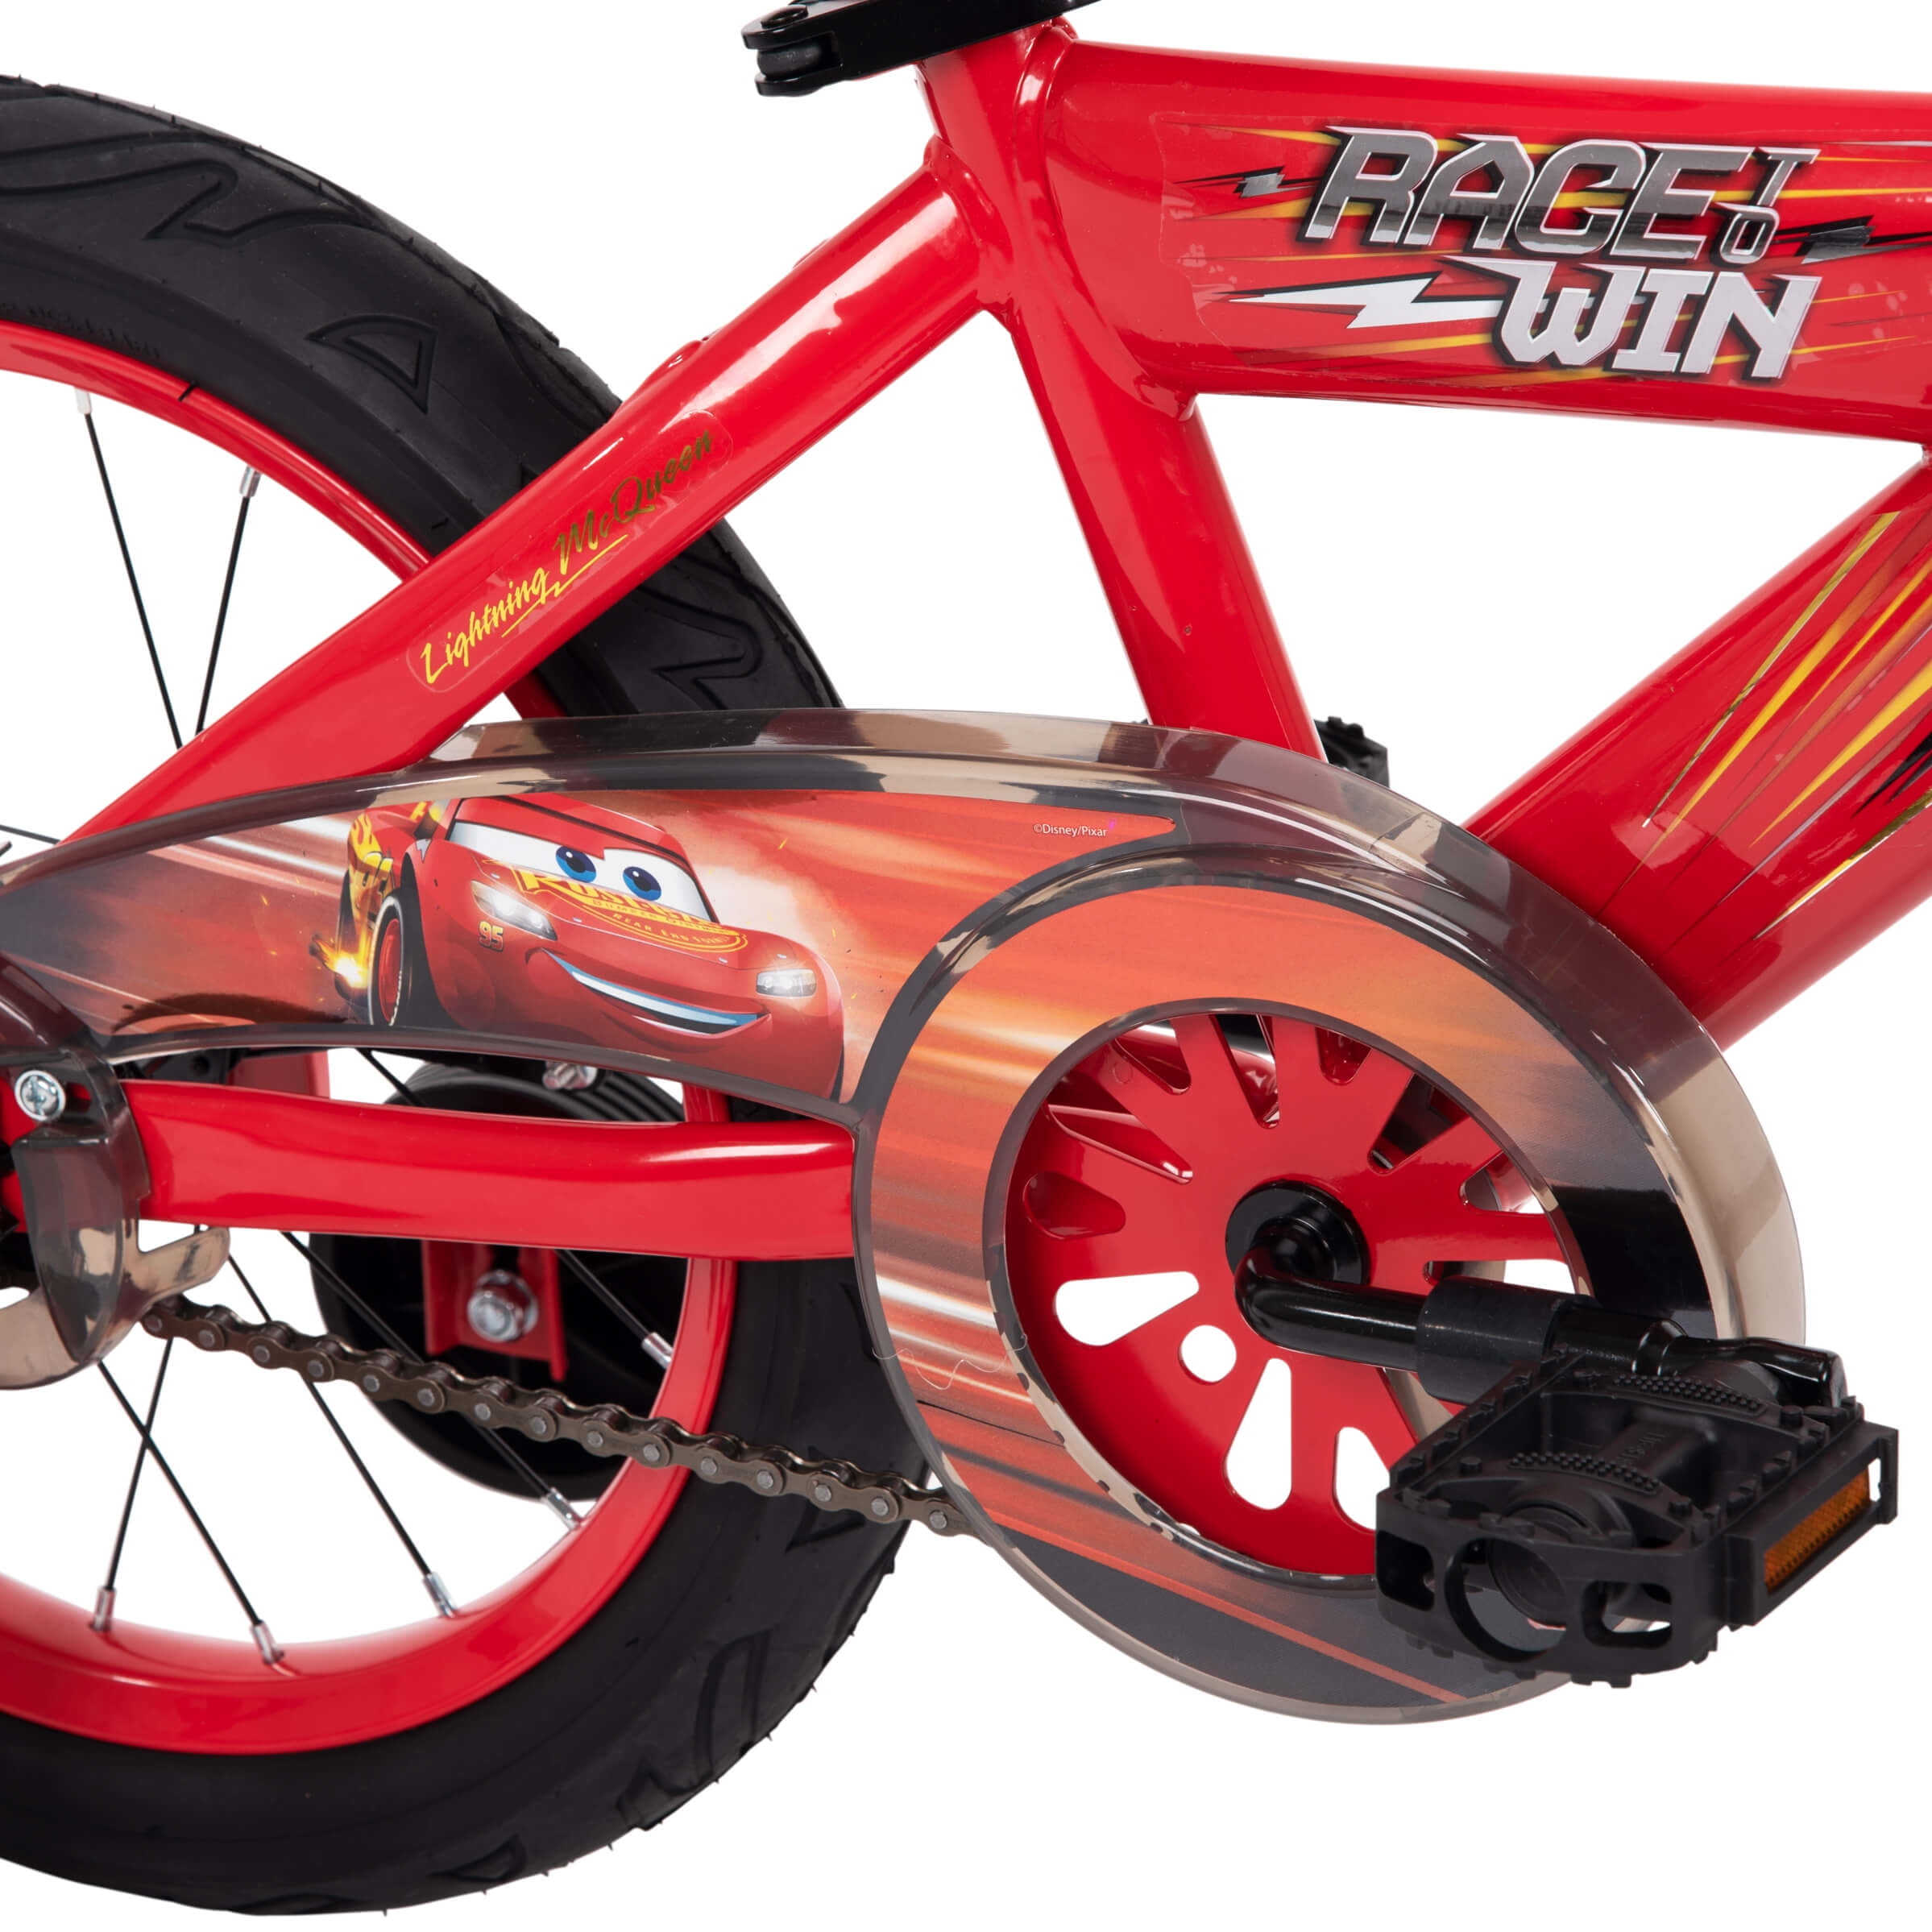 16" Disney / Pixar McQueen EZ Build Kids Bike with Sounds, Red Walmart.com